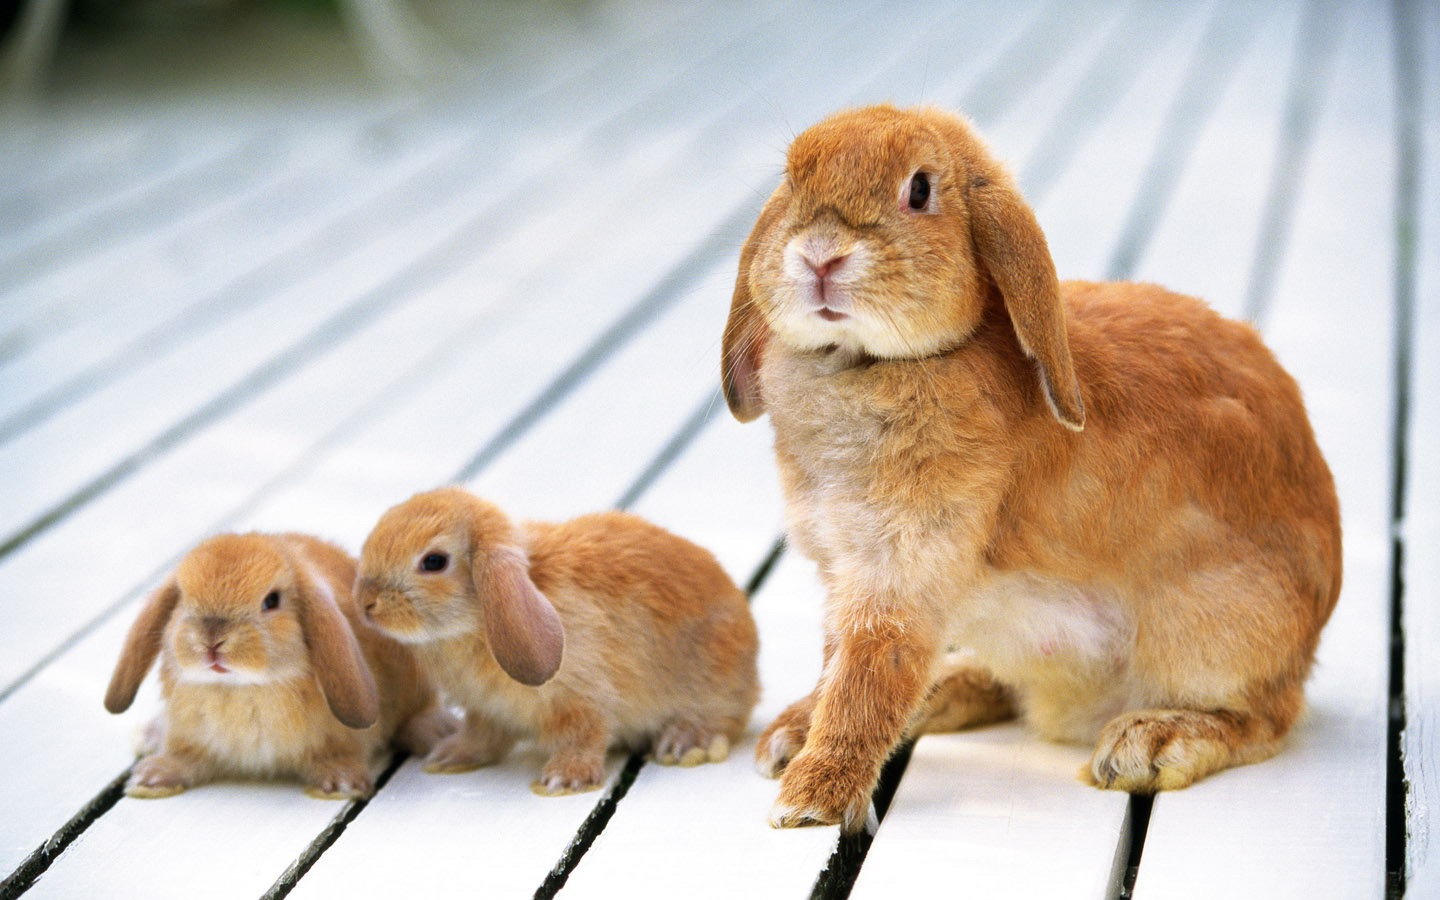 _斐波那契数列兔子繁殖编程_斐波那契数列兔子繁殖问题